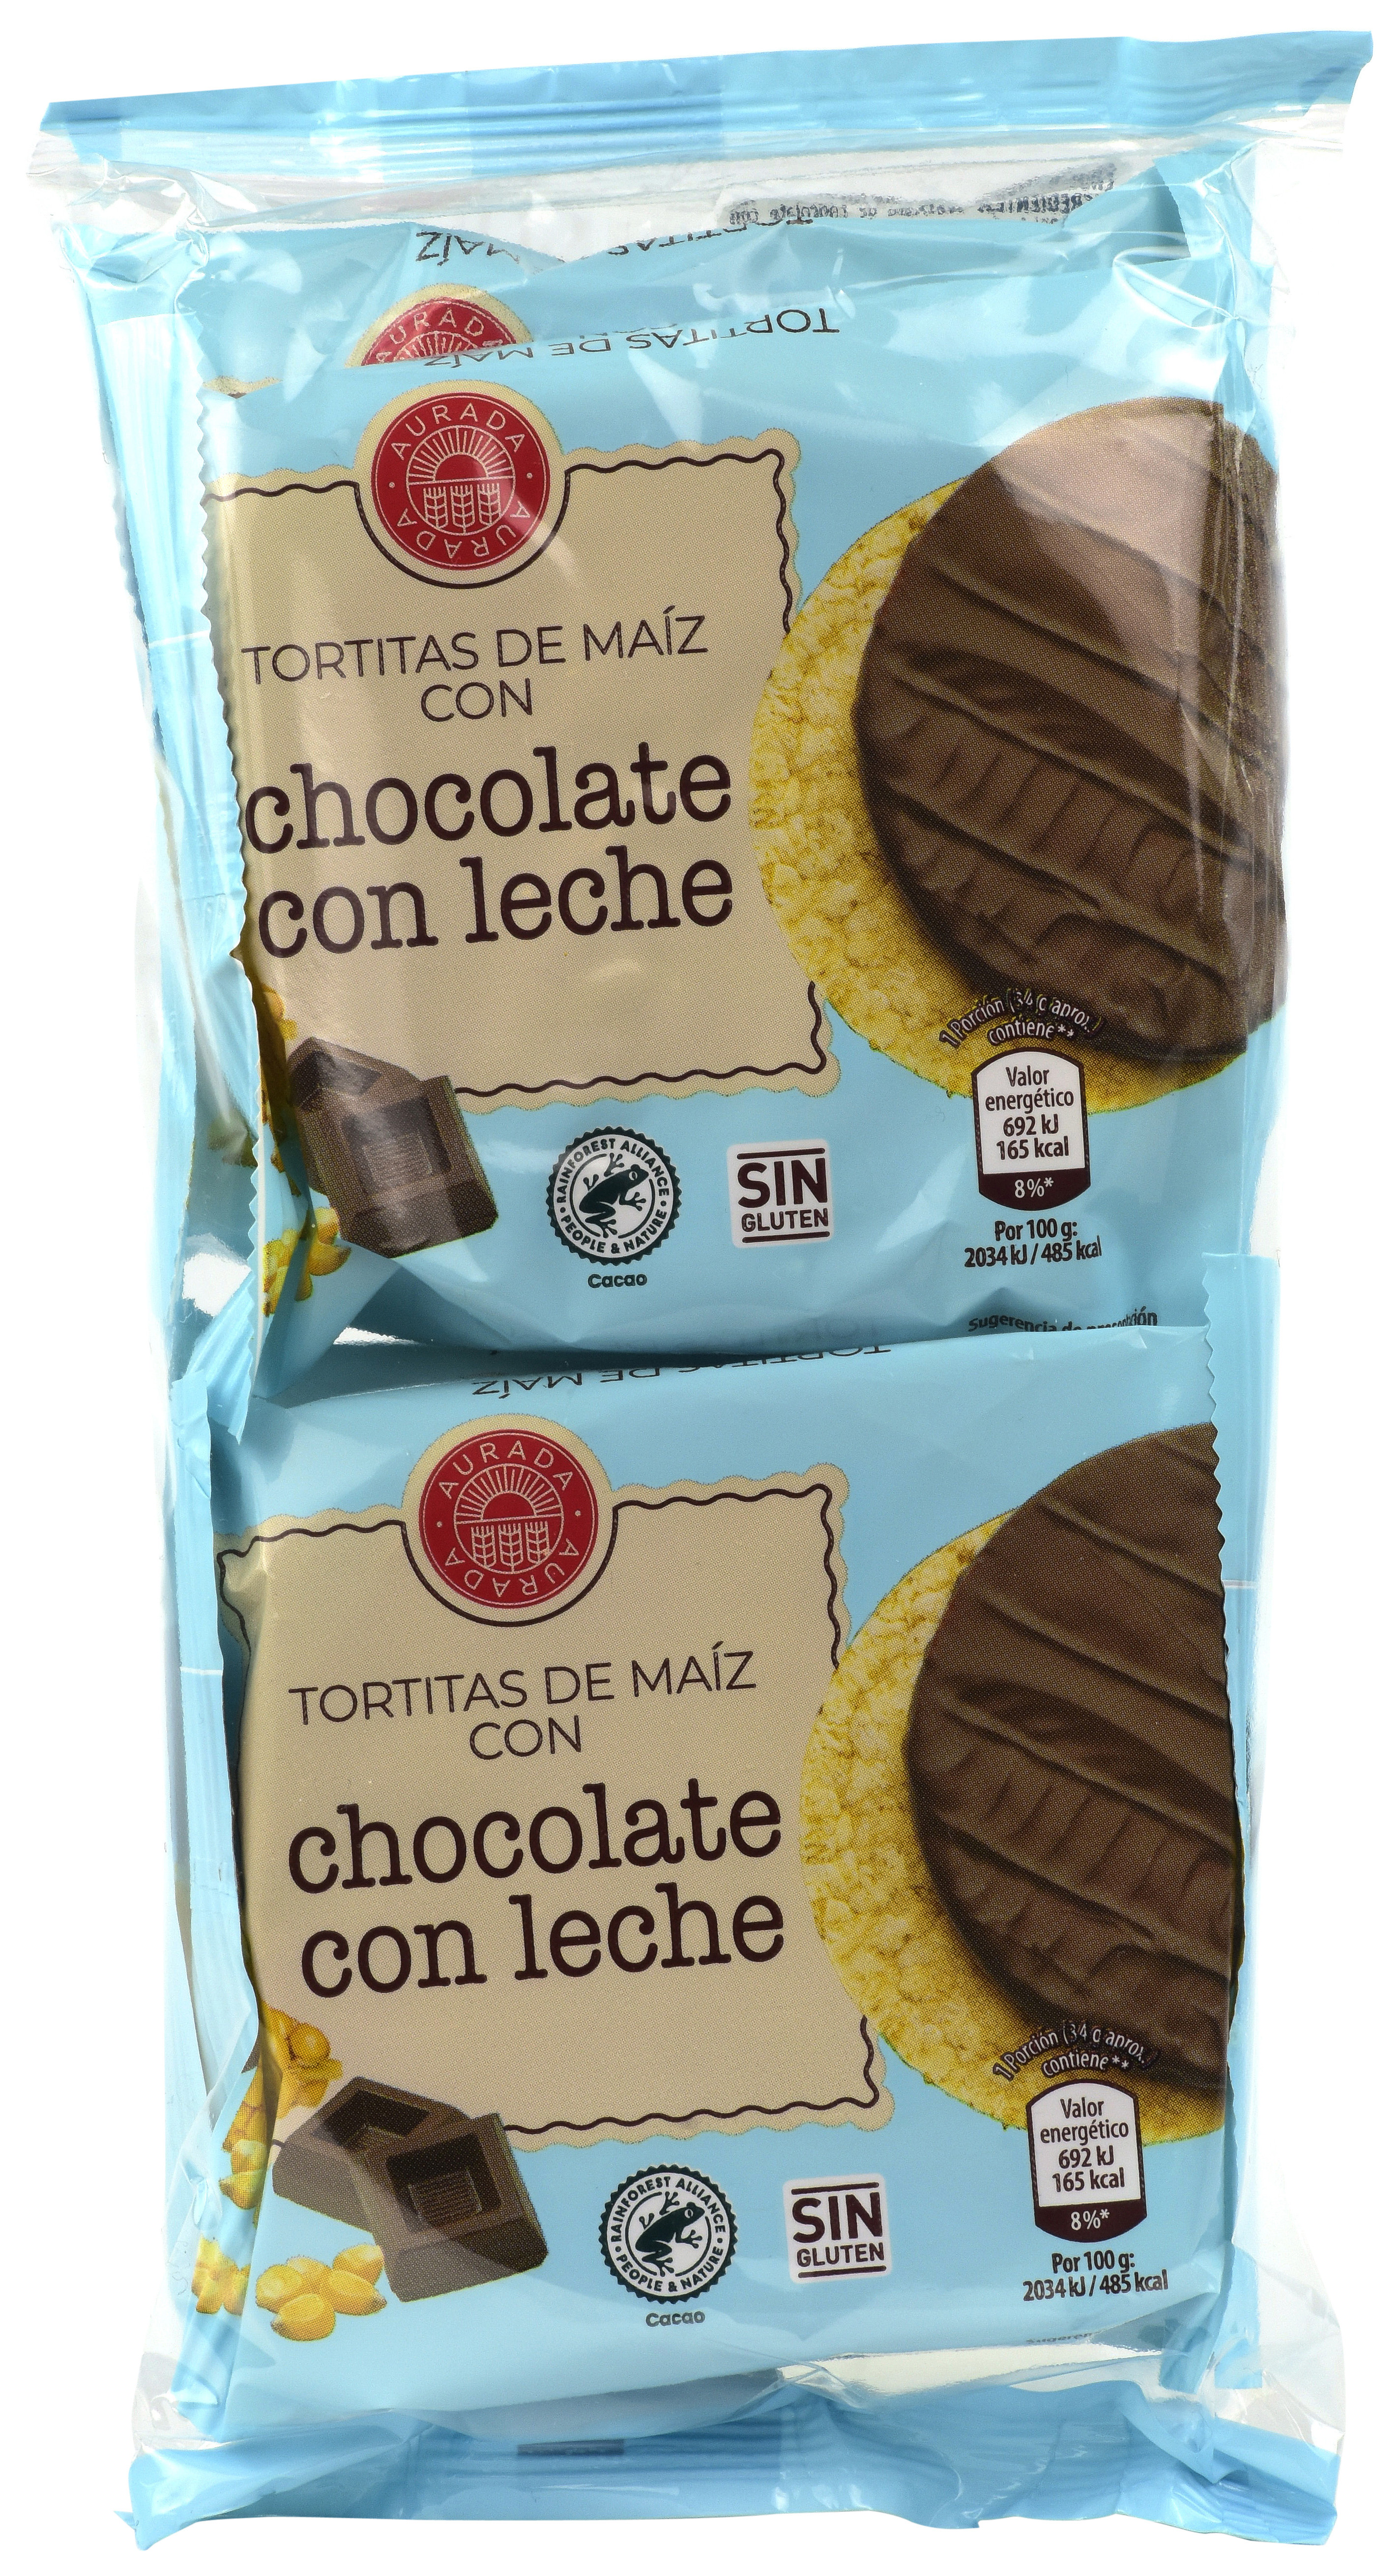 TORTITA DE MAÍZ CON CHOCOLATE CON LECHE